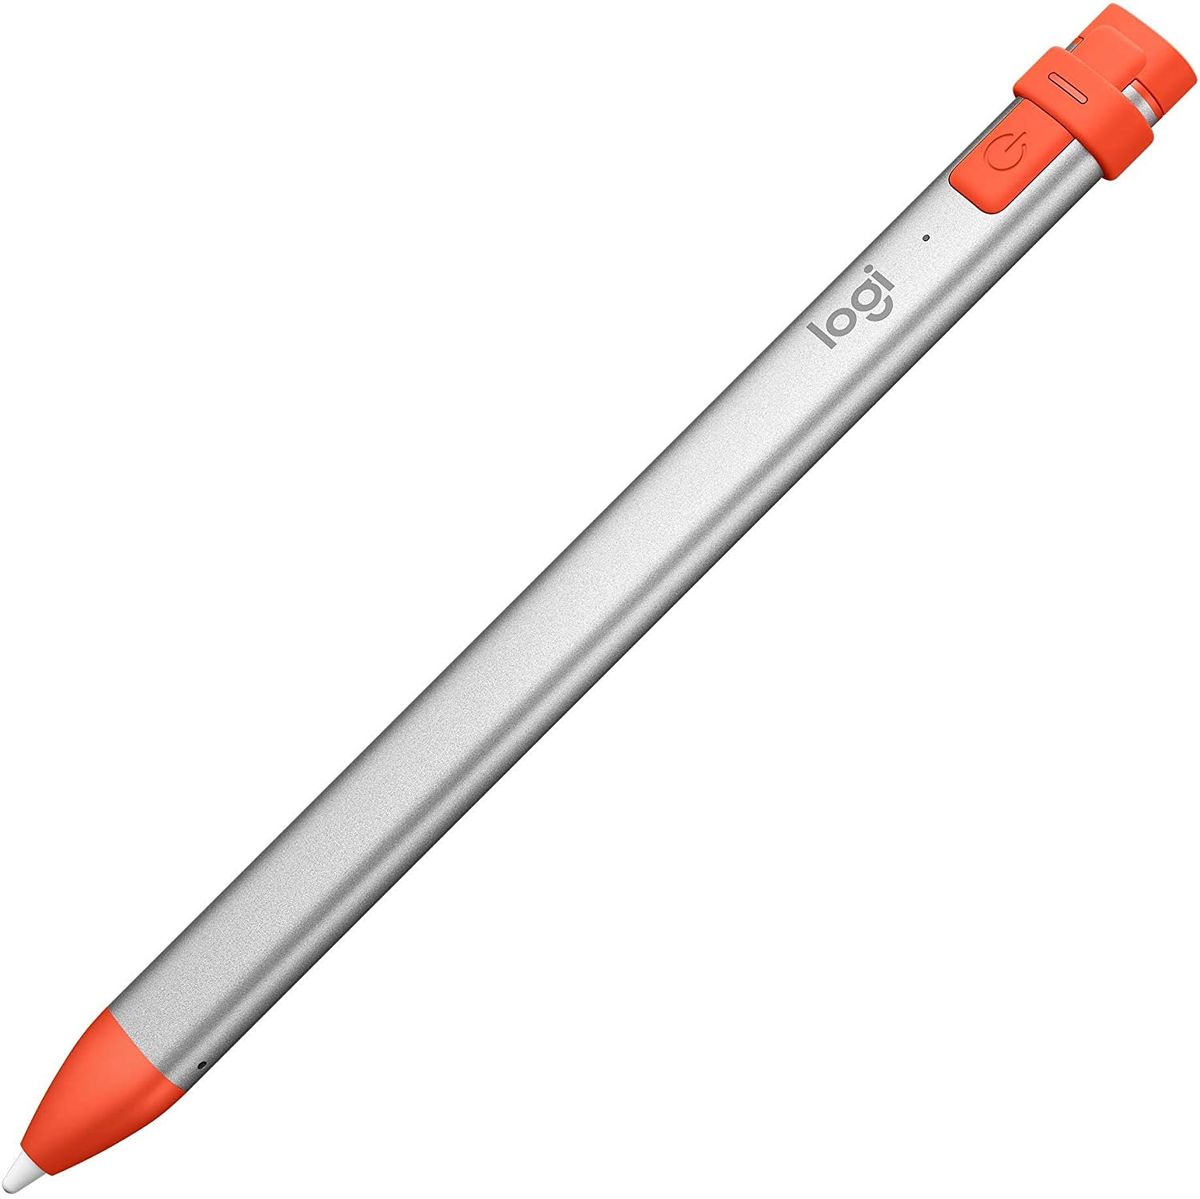 5 najboljih Apple Pencil alternativa koje neće slomiti banku